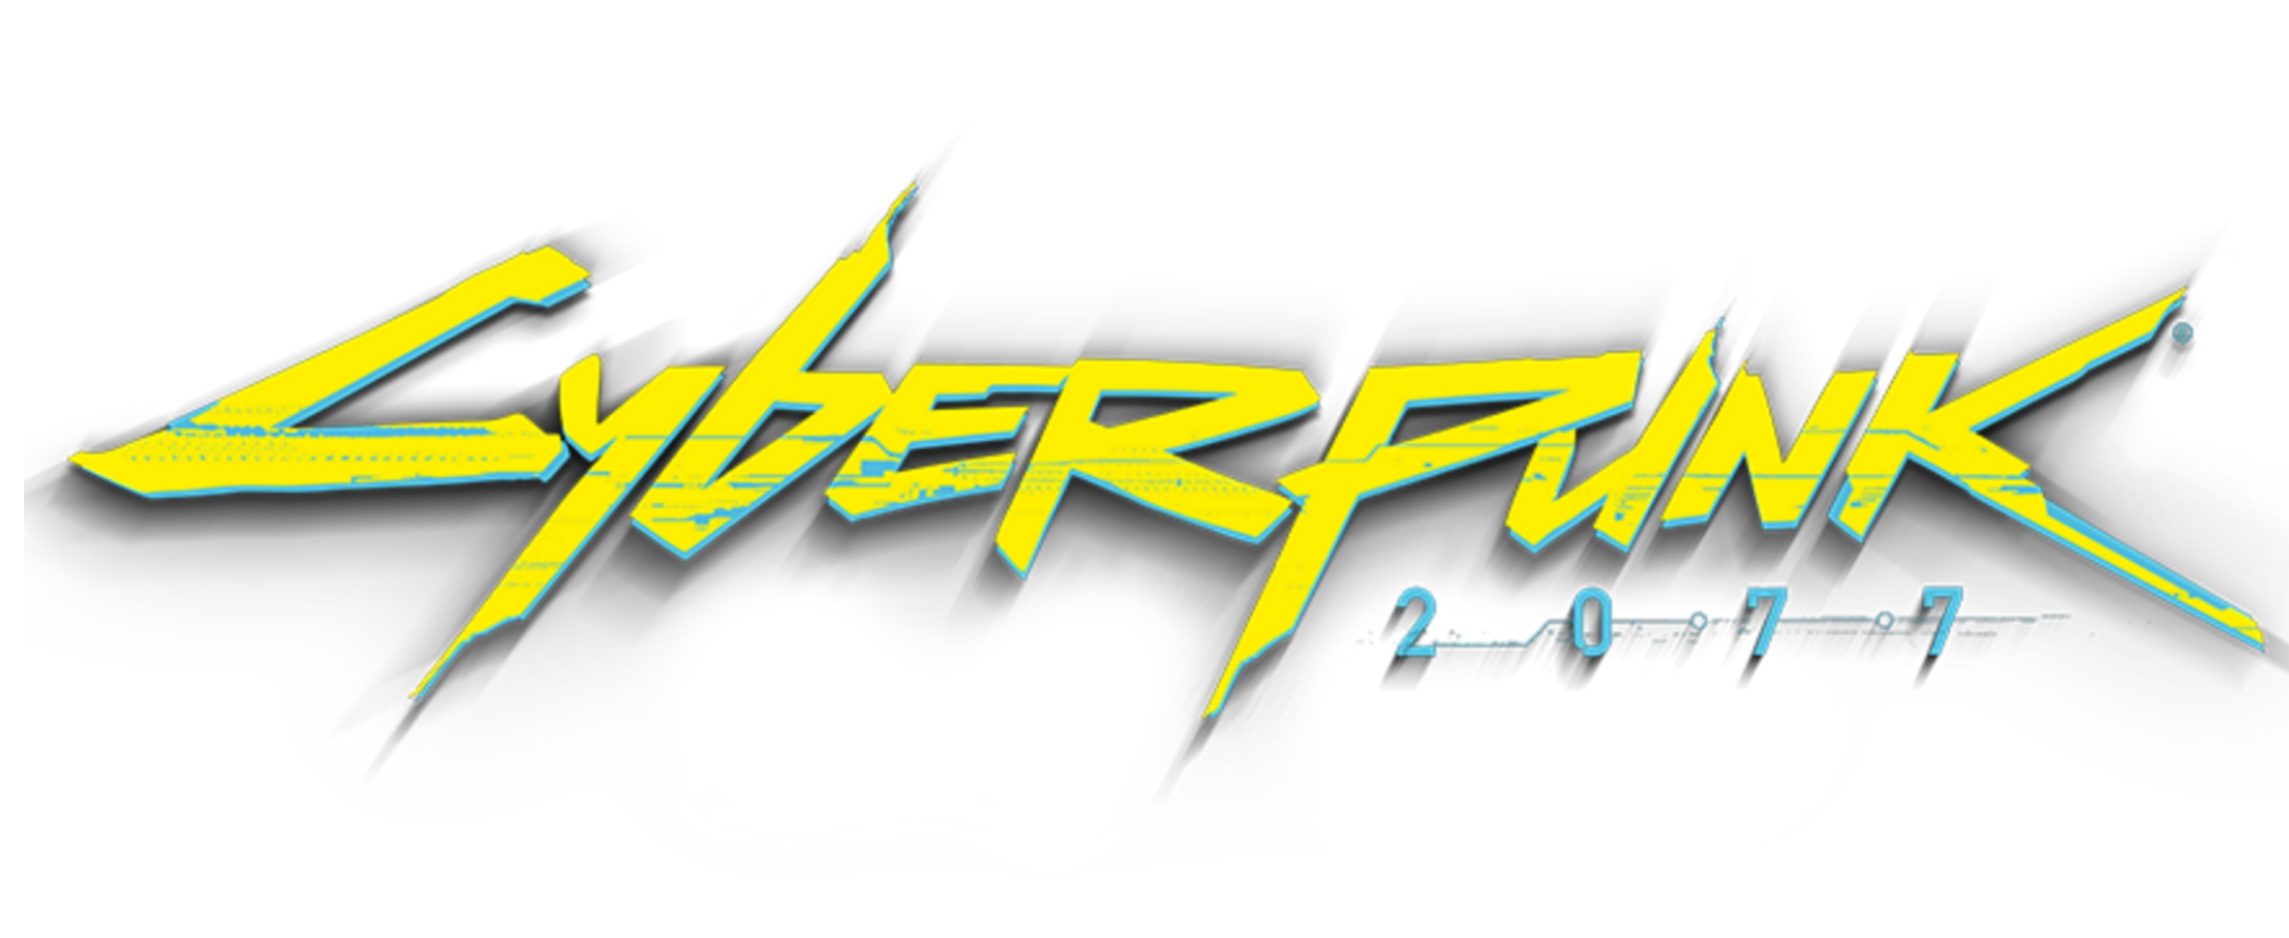 Militech cyberpunk logo фото 82